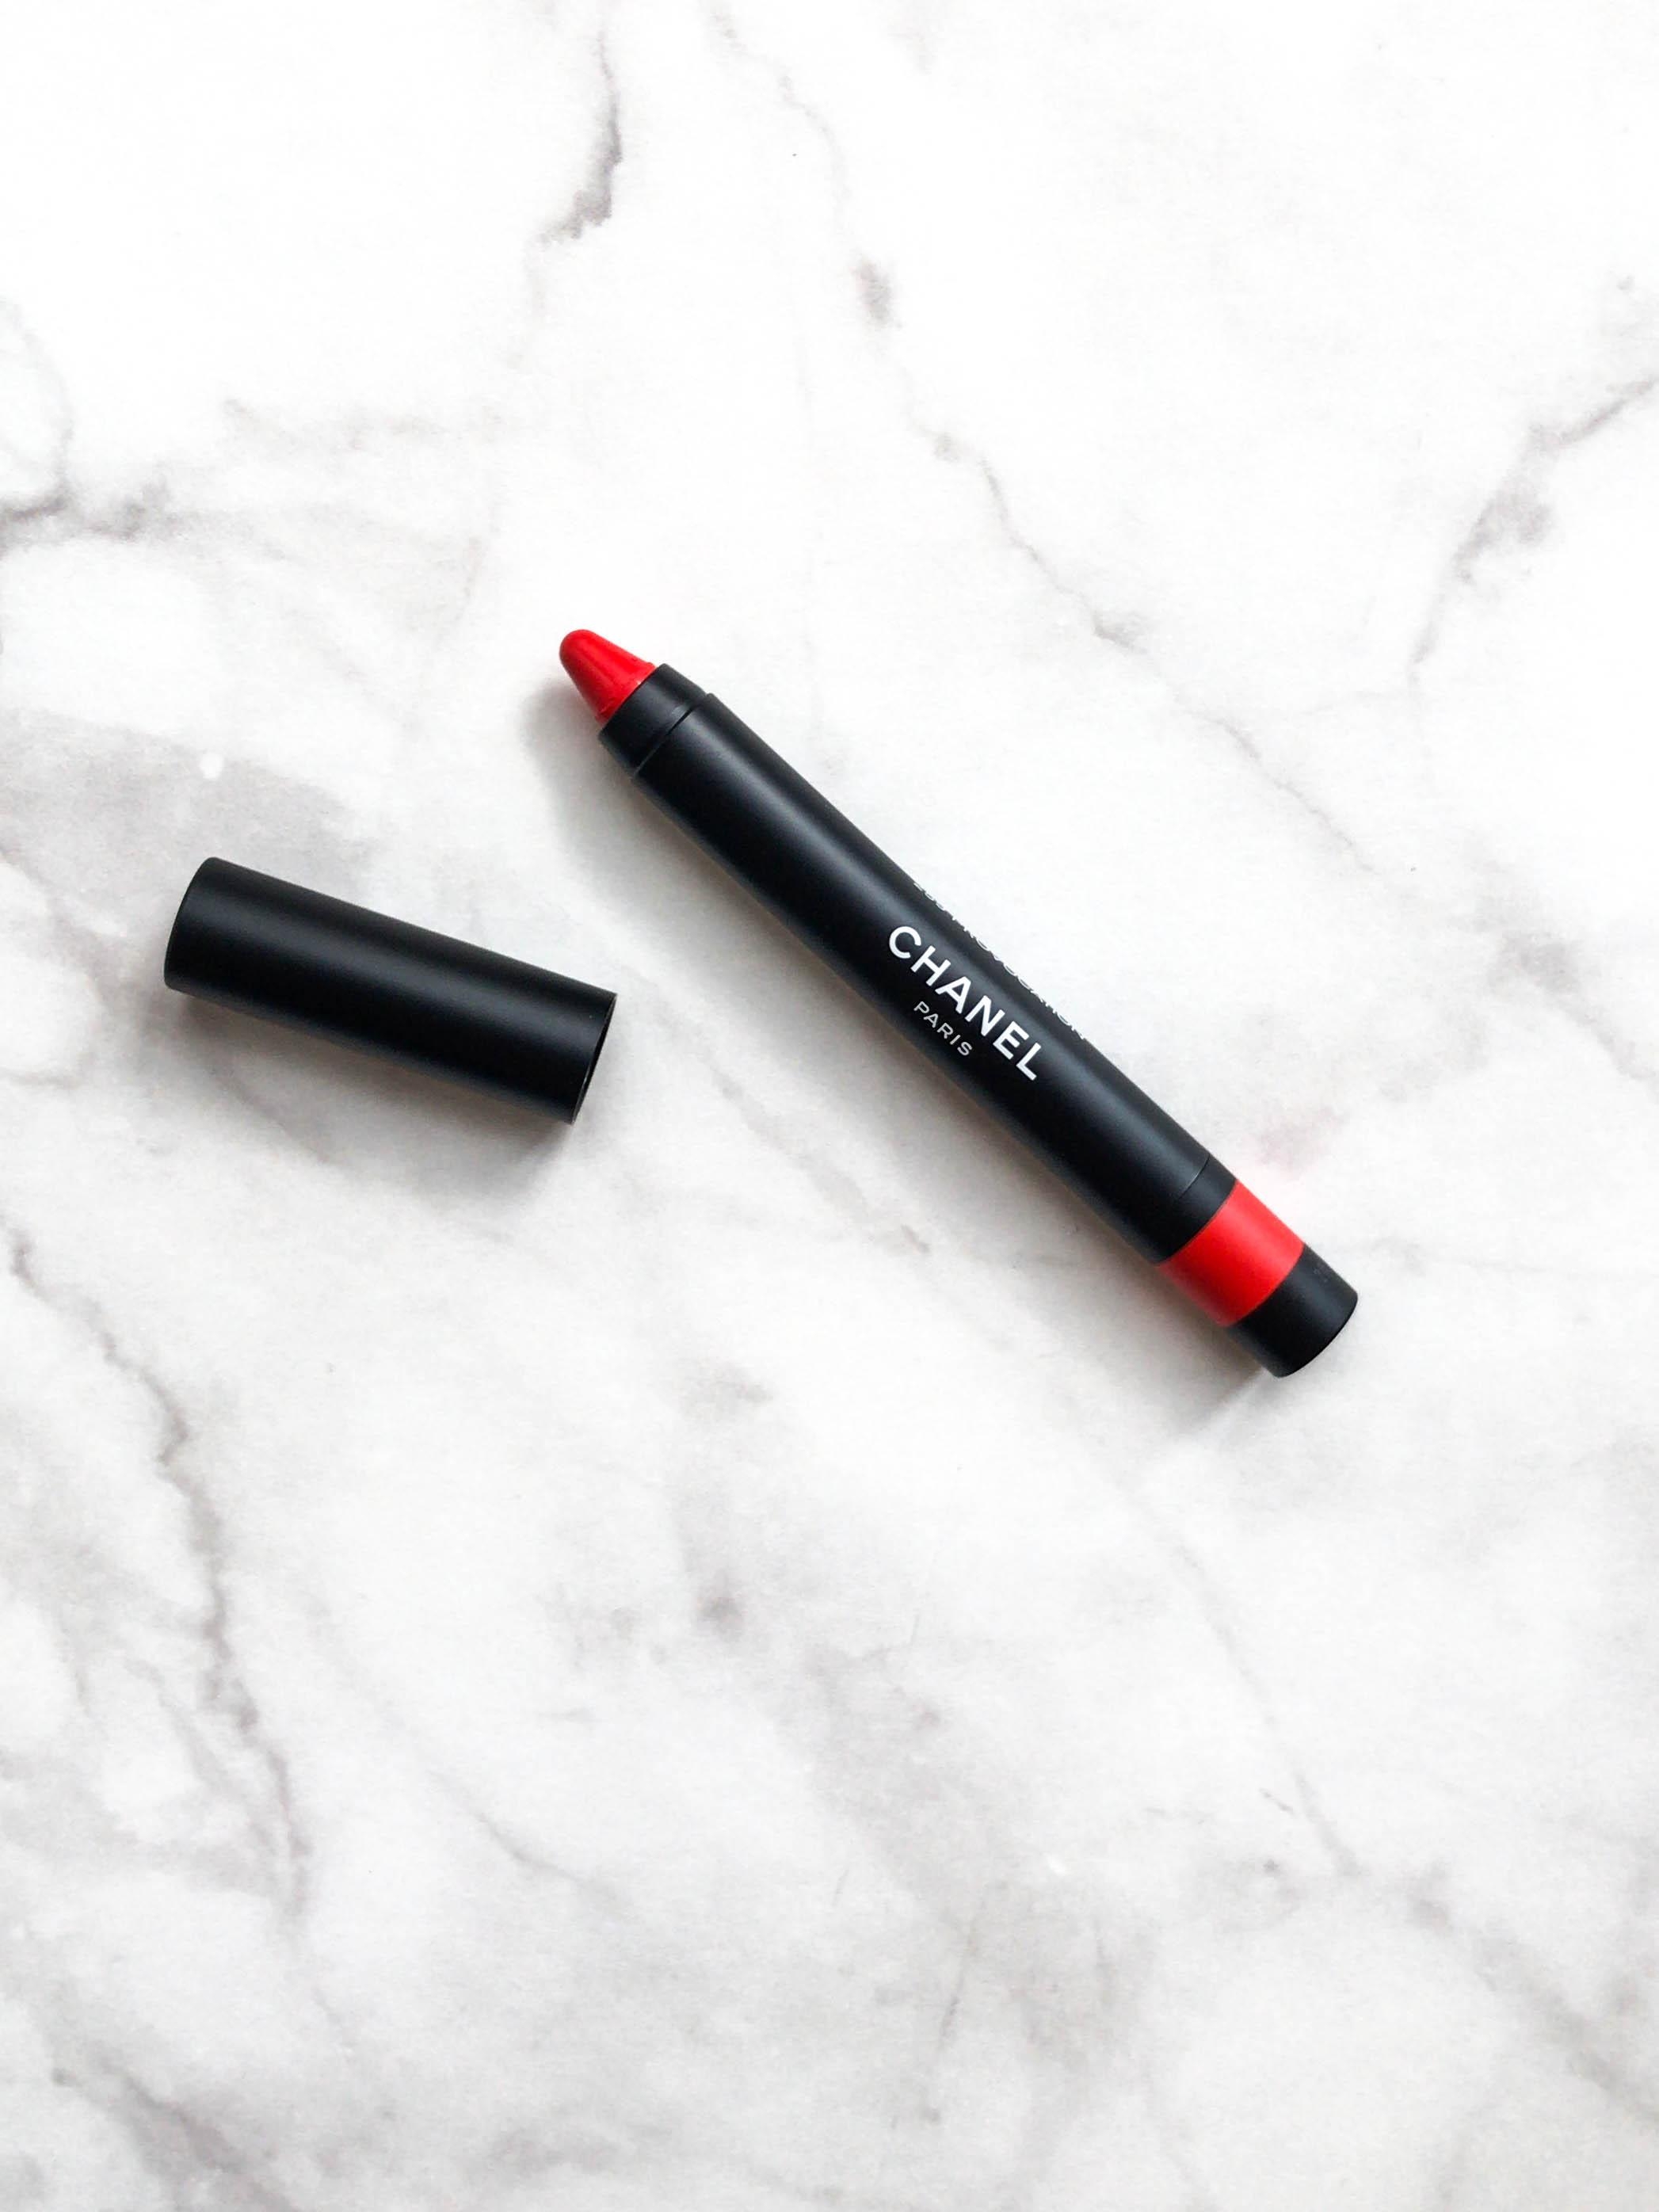 Mattes Statement-Piece: Le Rouge Crayon de Colour Mat 259 Provocation
#beautylieblinge #chanelbeauty #lippenstift